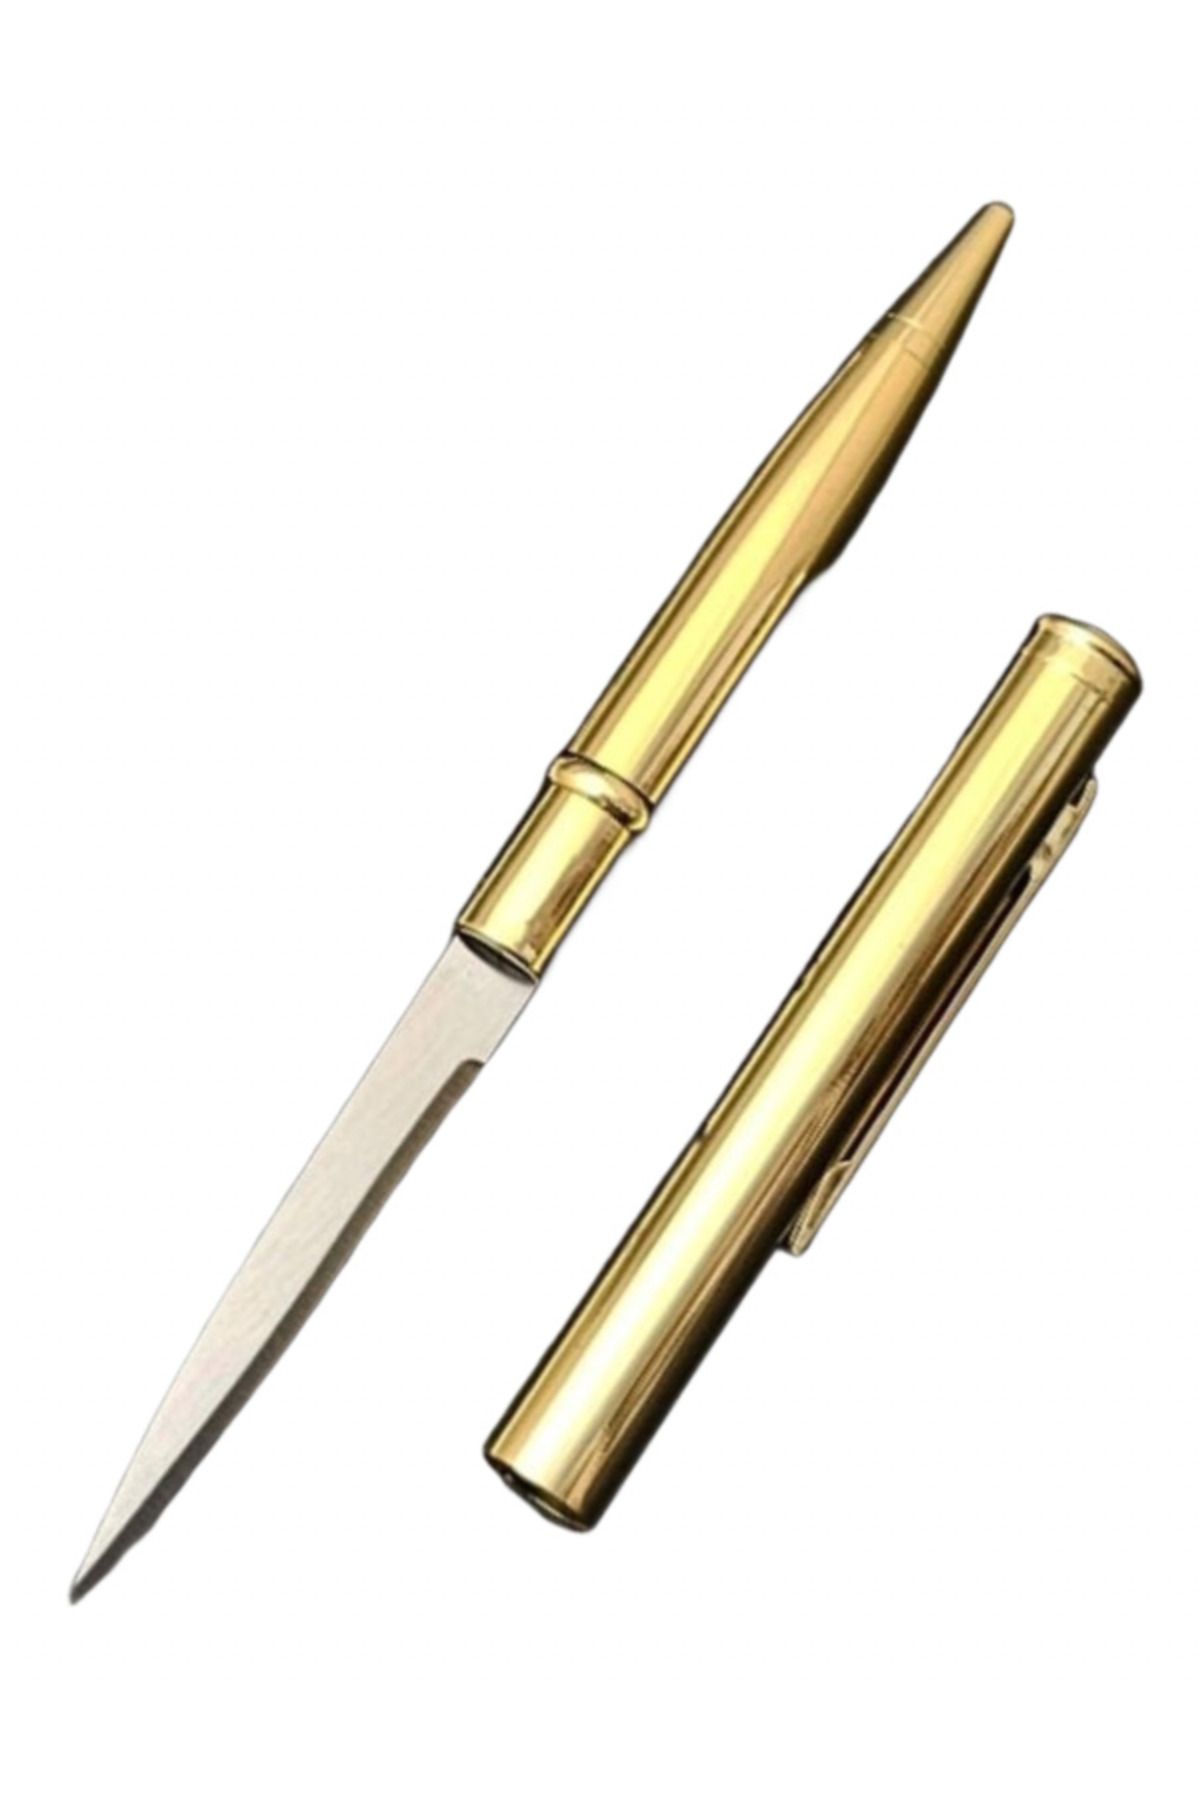 KnivesAndWeapons Kalem Bıçak Gizli Bıçak Kalem Görünümlü Gold Lüks Kalem Standart Kalem Boyutu Taktikal